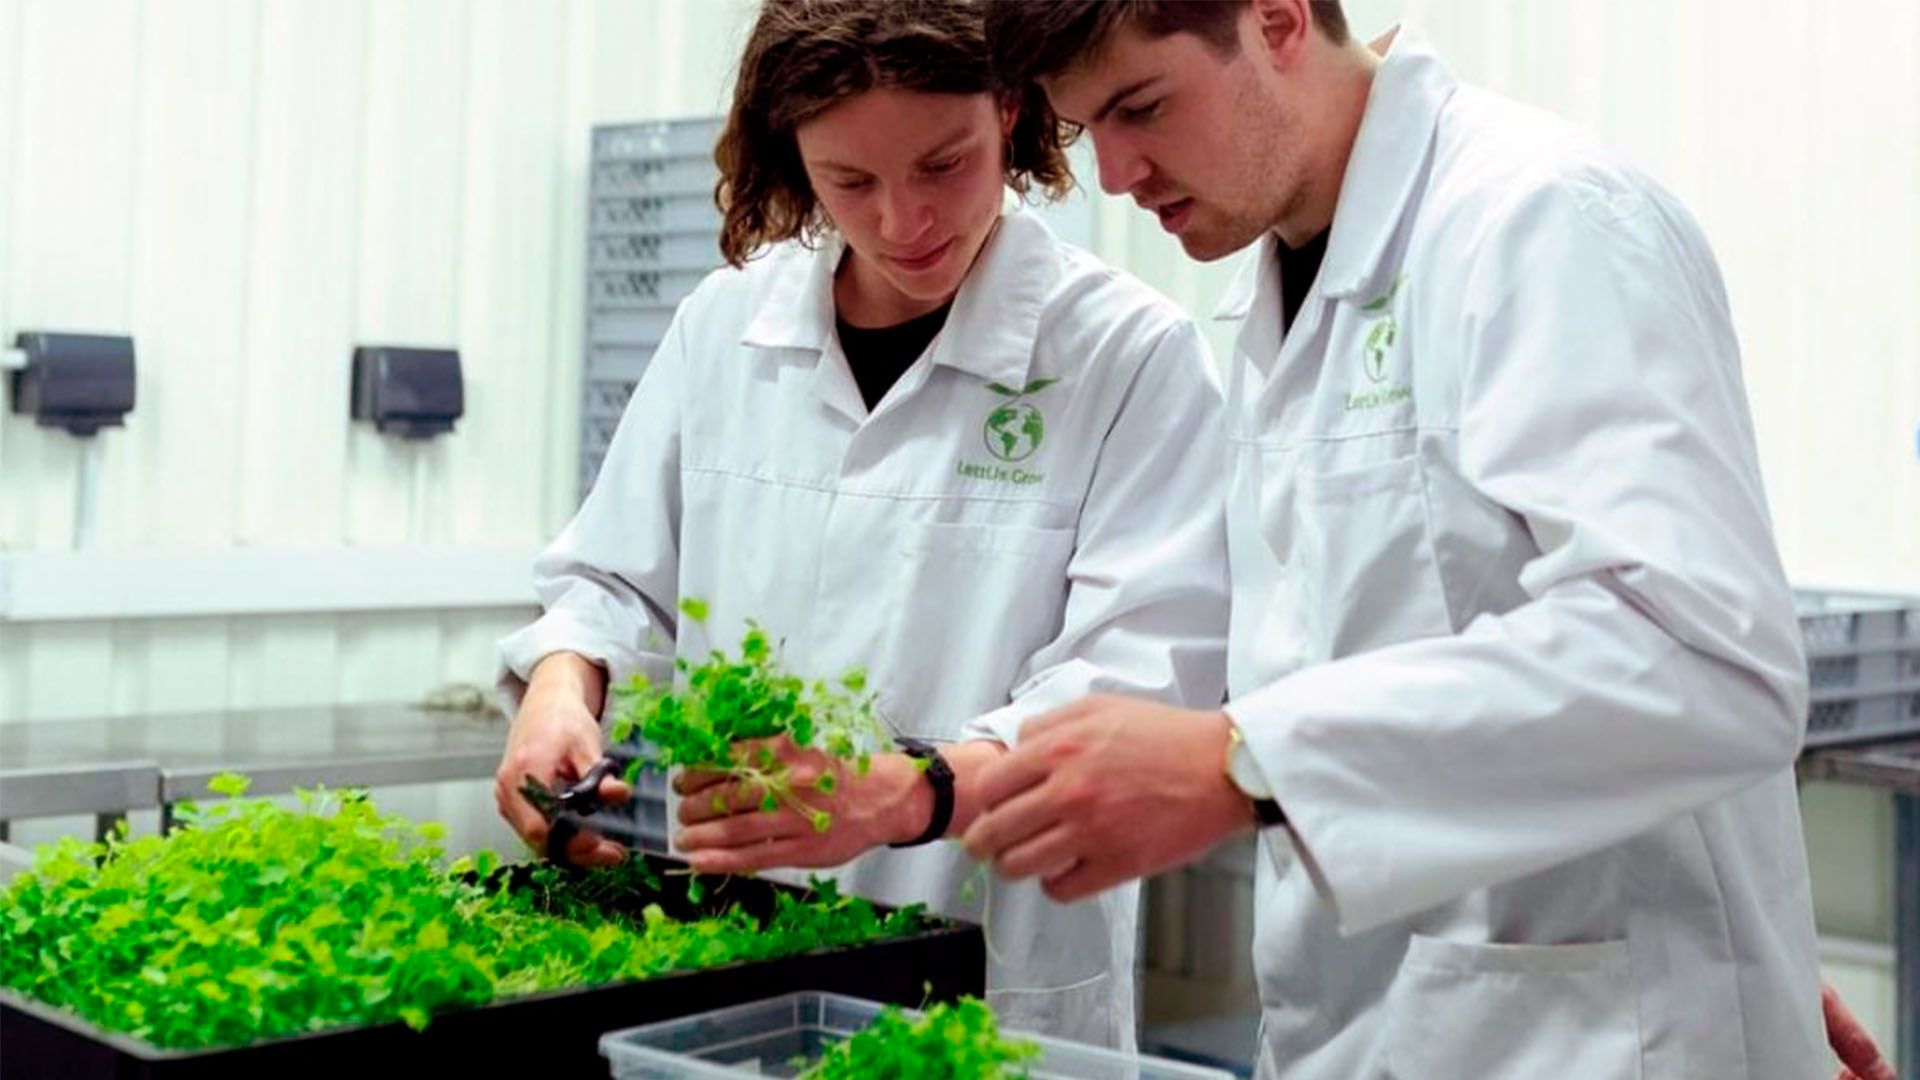 Bioproductos. Dos investigadores manipulando material vegetal en laboratorio